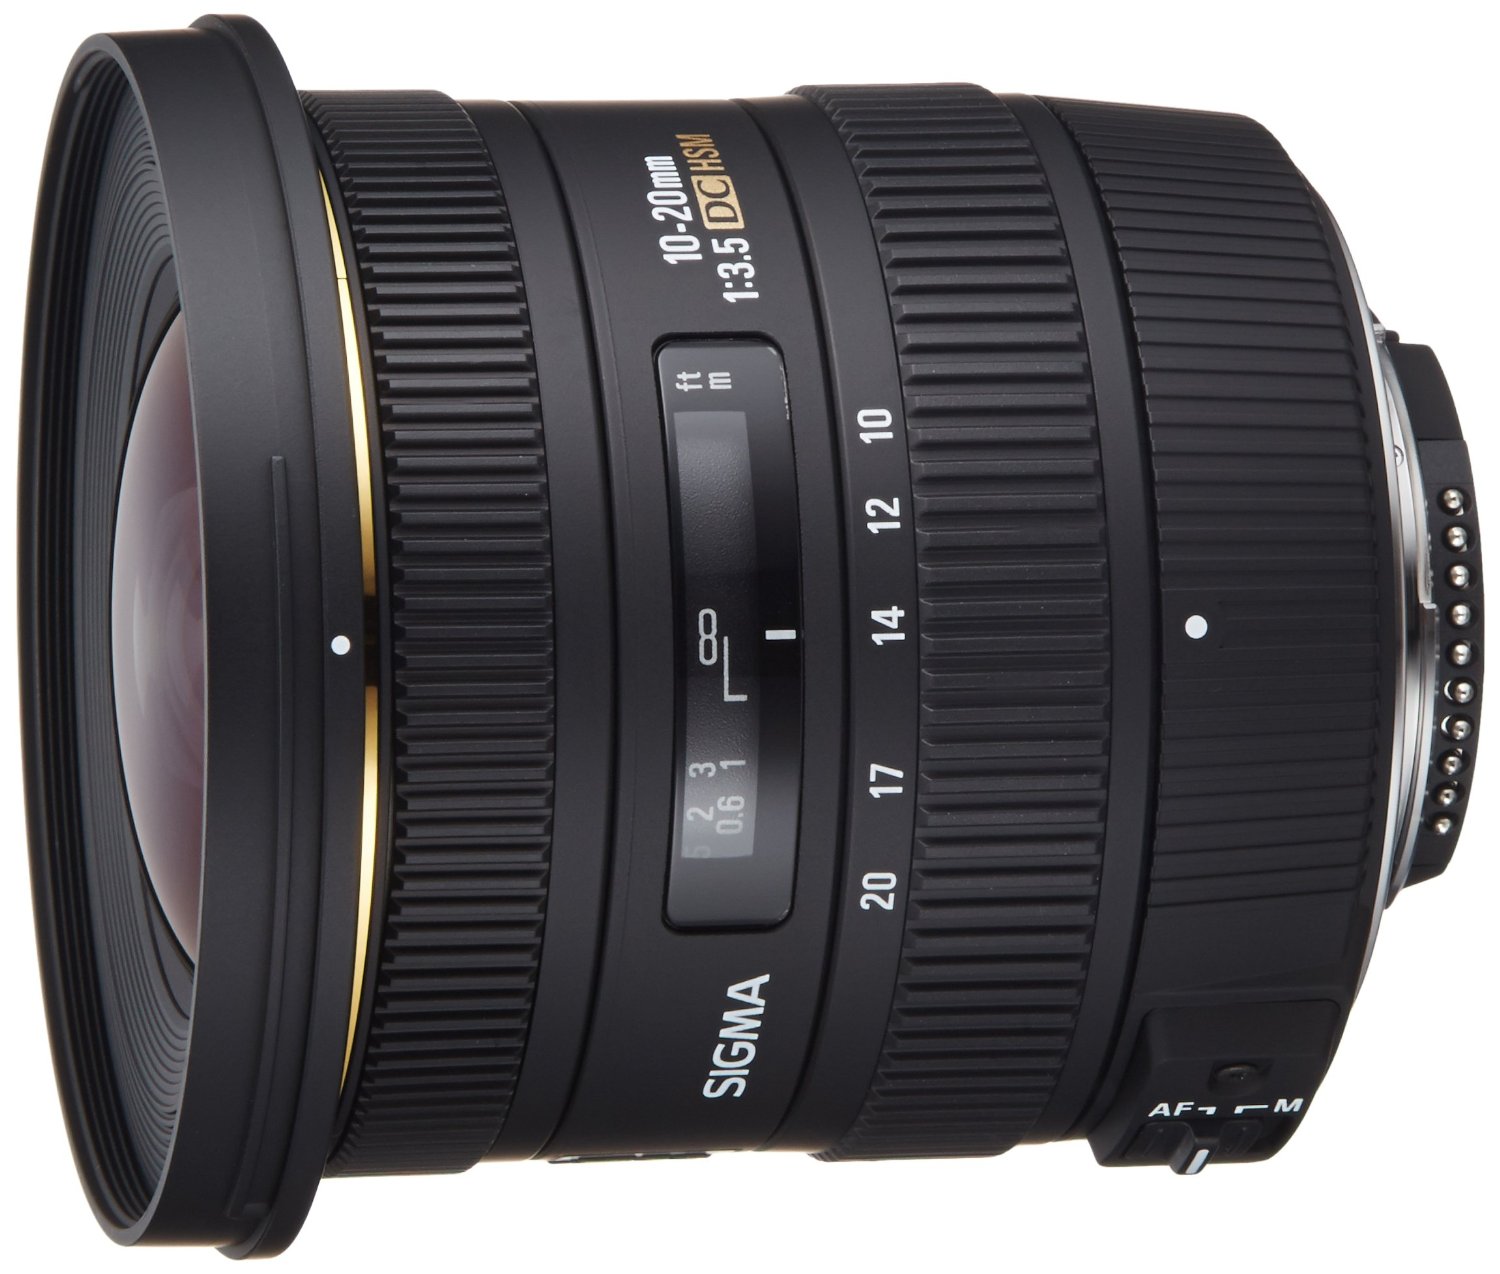 SIGMA 10-20mm f/3.5 EX DC HSM ELD SLD Aspherical Super Wide Angle Lens for Nikon Digital SLR Cameras